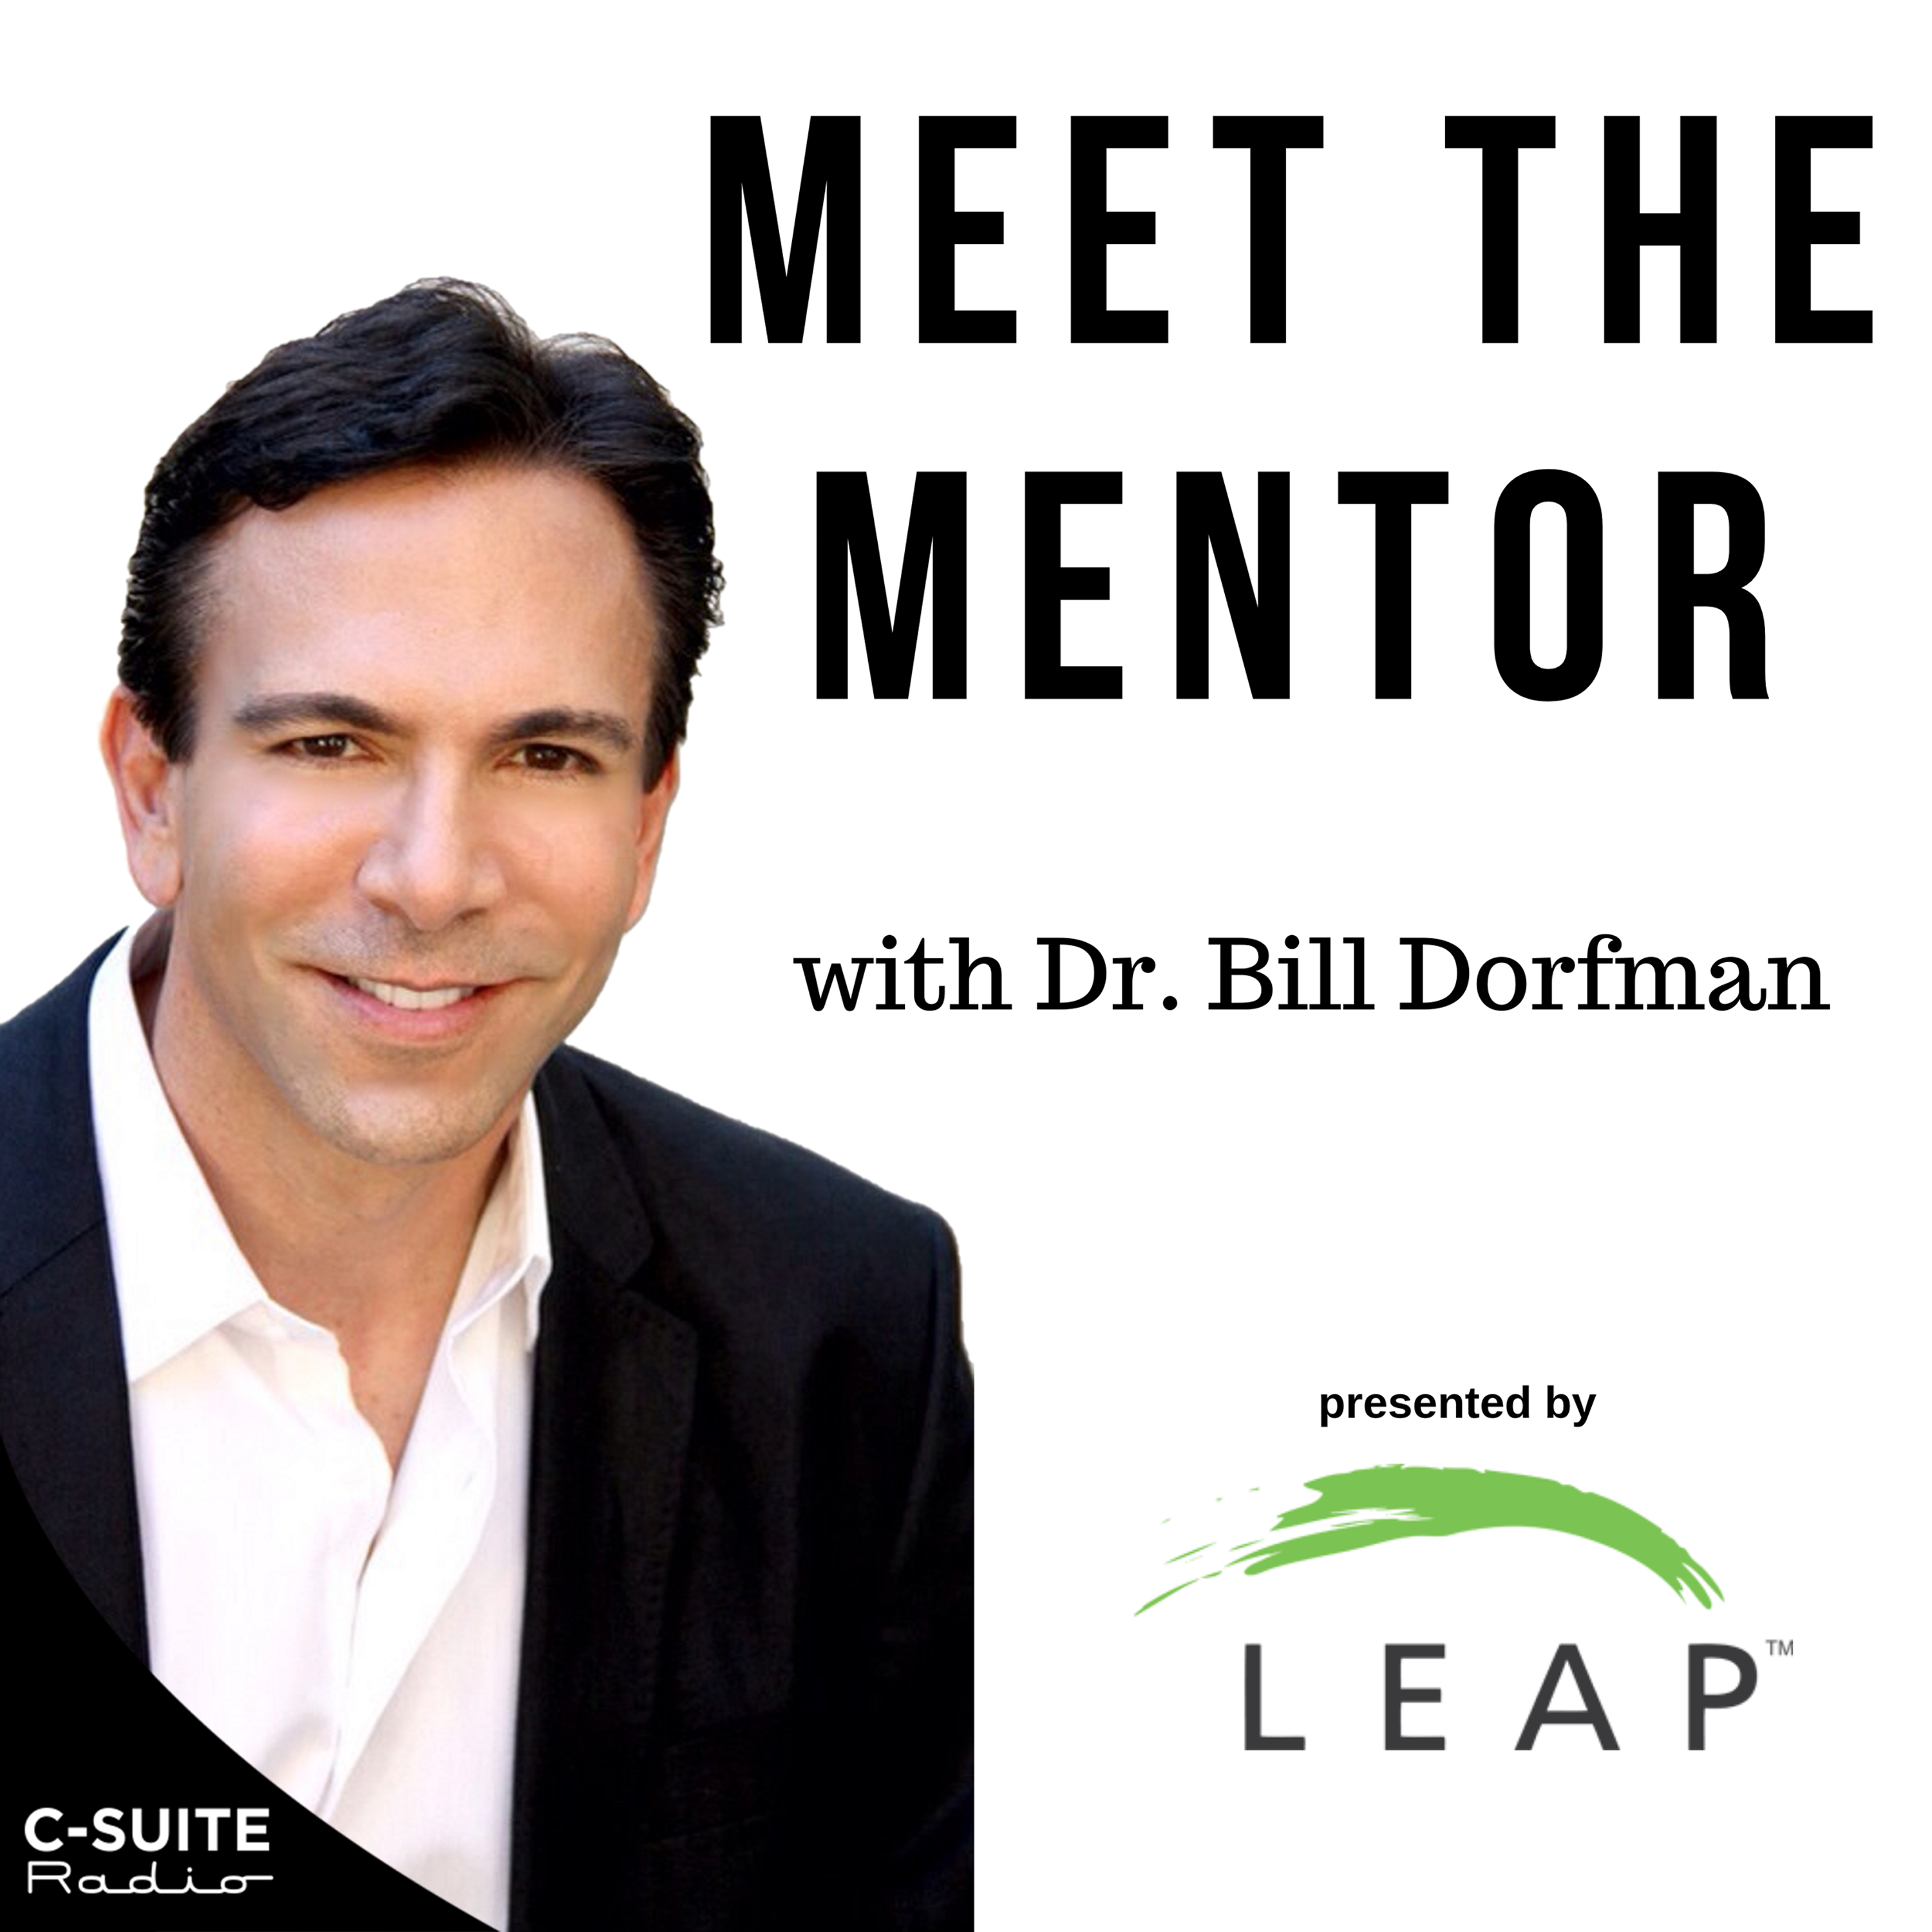 Meet the Mentor with Dr. Bill Dorfman